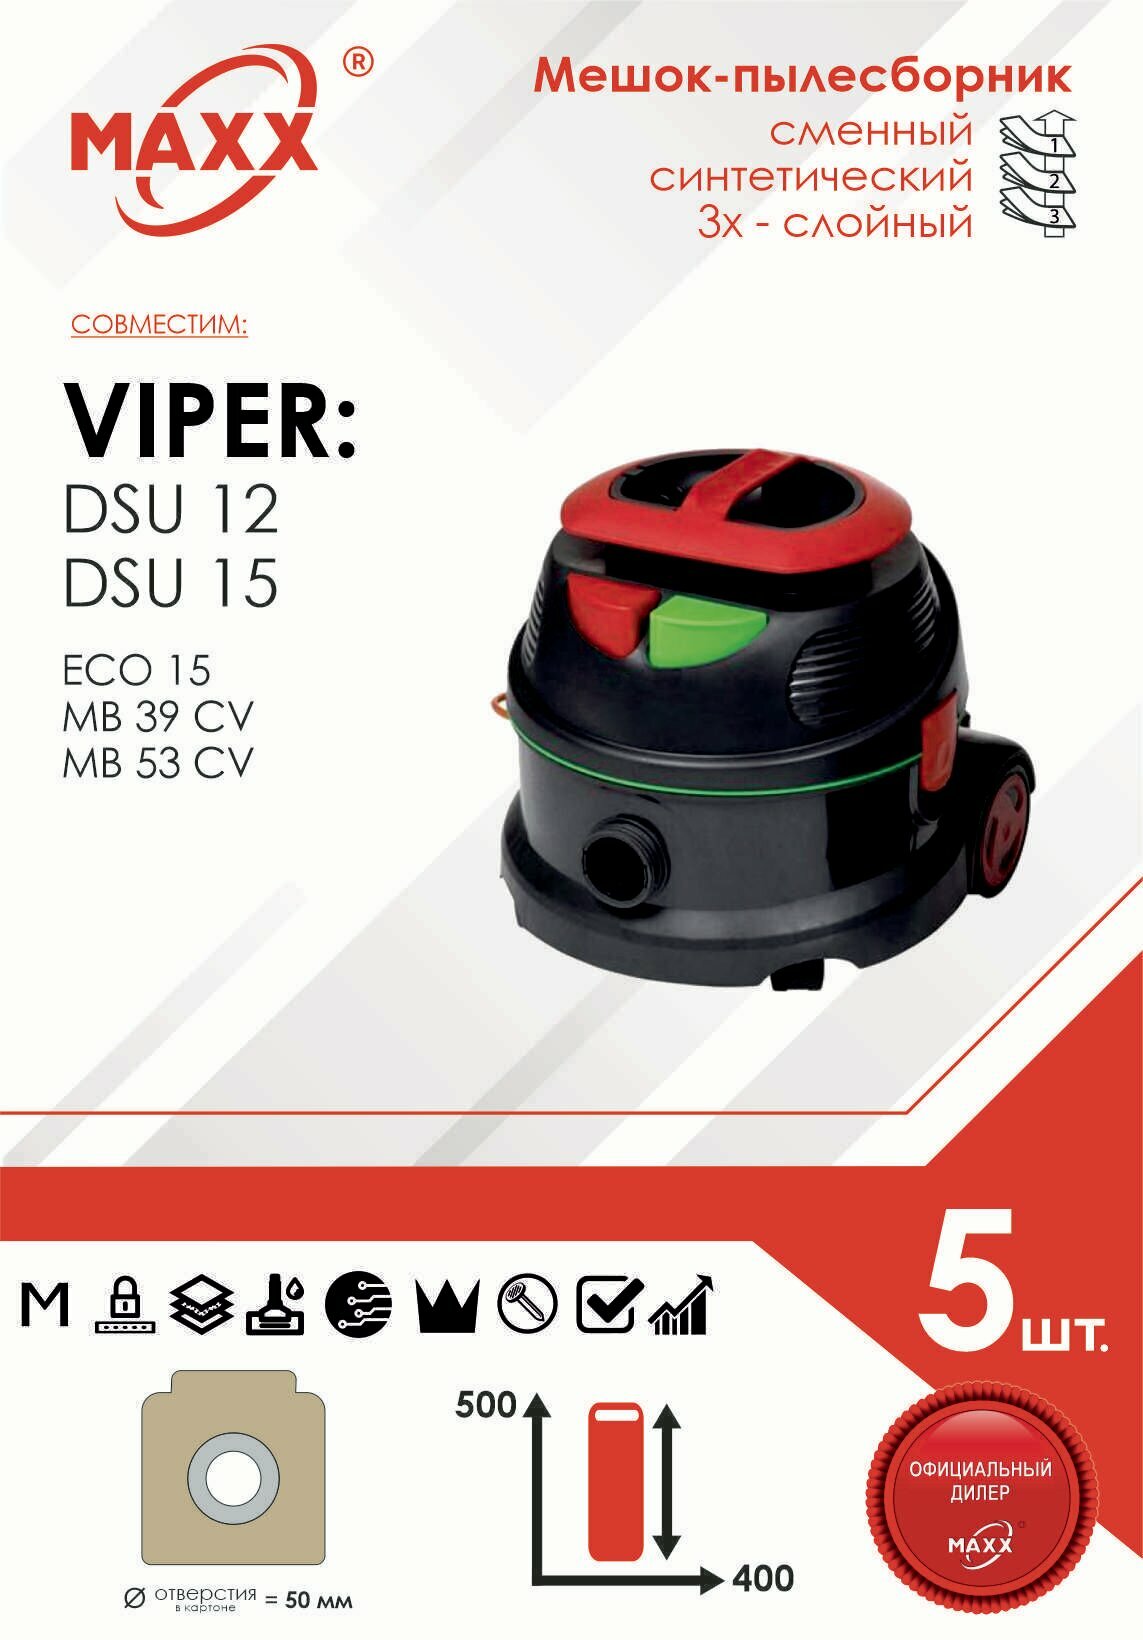 Мешок - пылесборник 5 шт. для пылесоса Viper DSU12, Viper DSU15